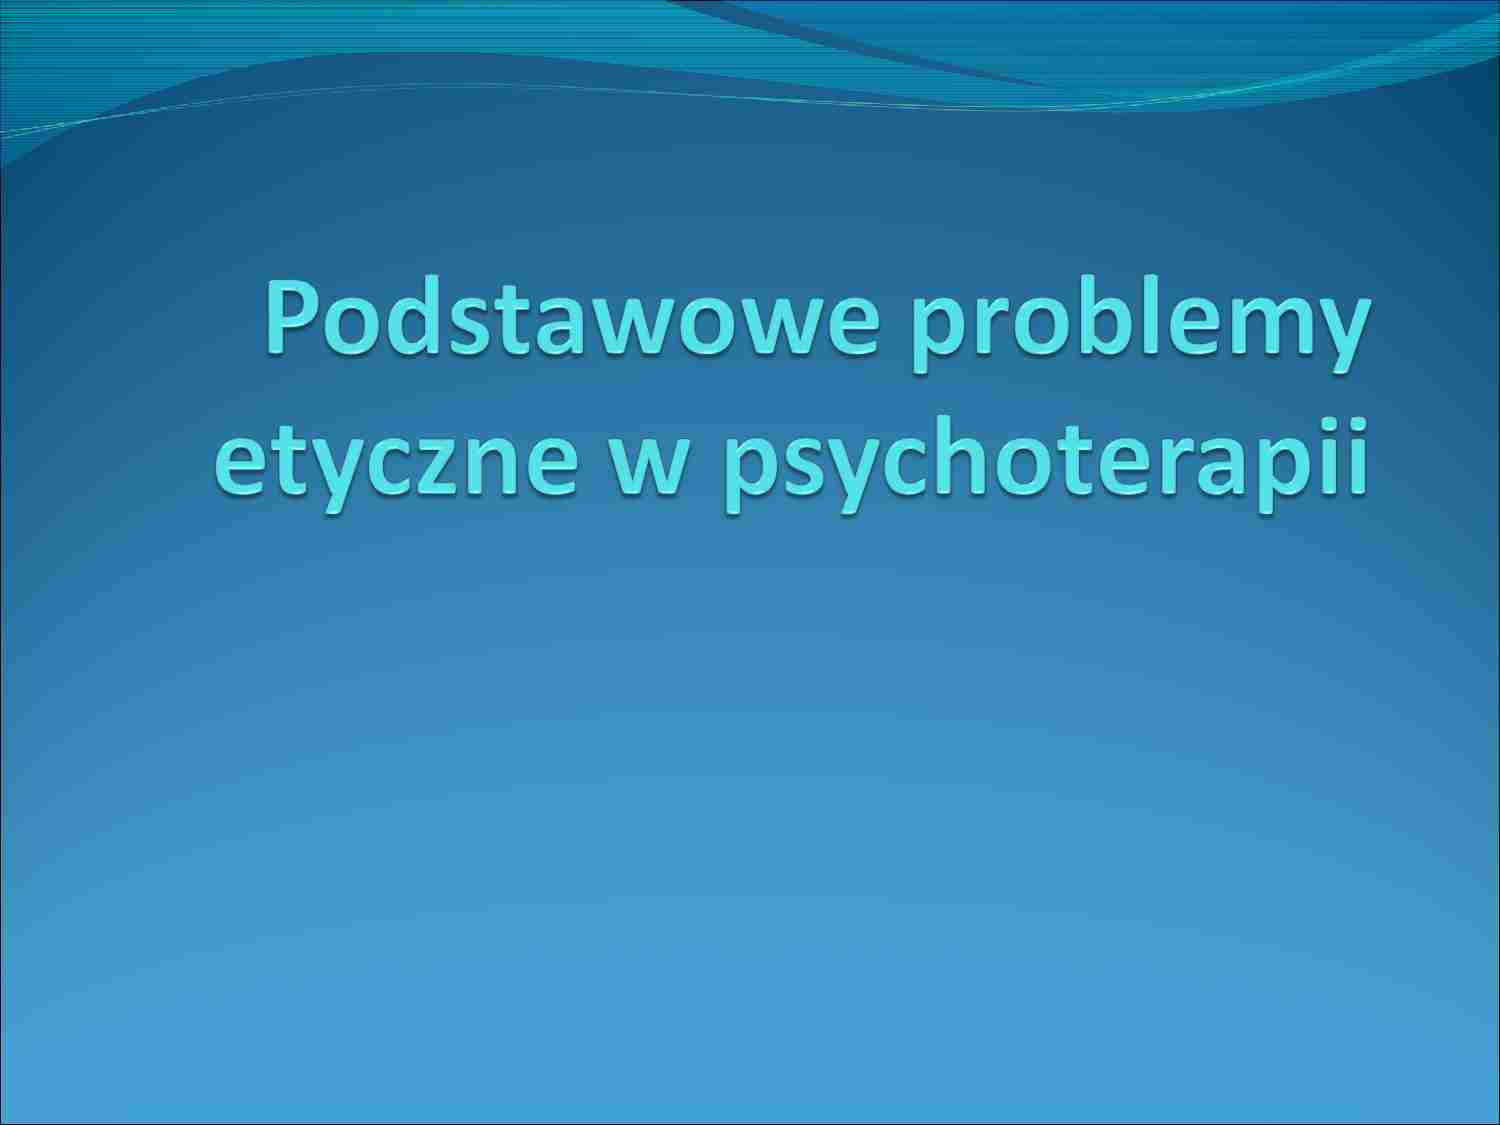 Problemy etyczne w psychoterapii - prezentacja - strona 1